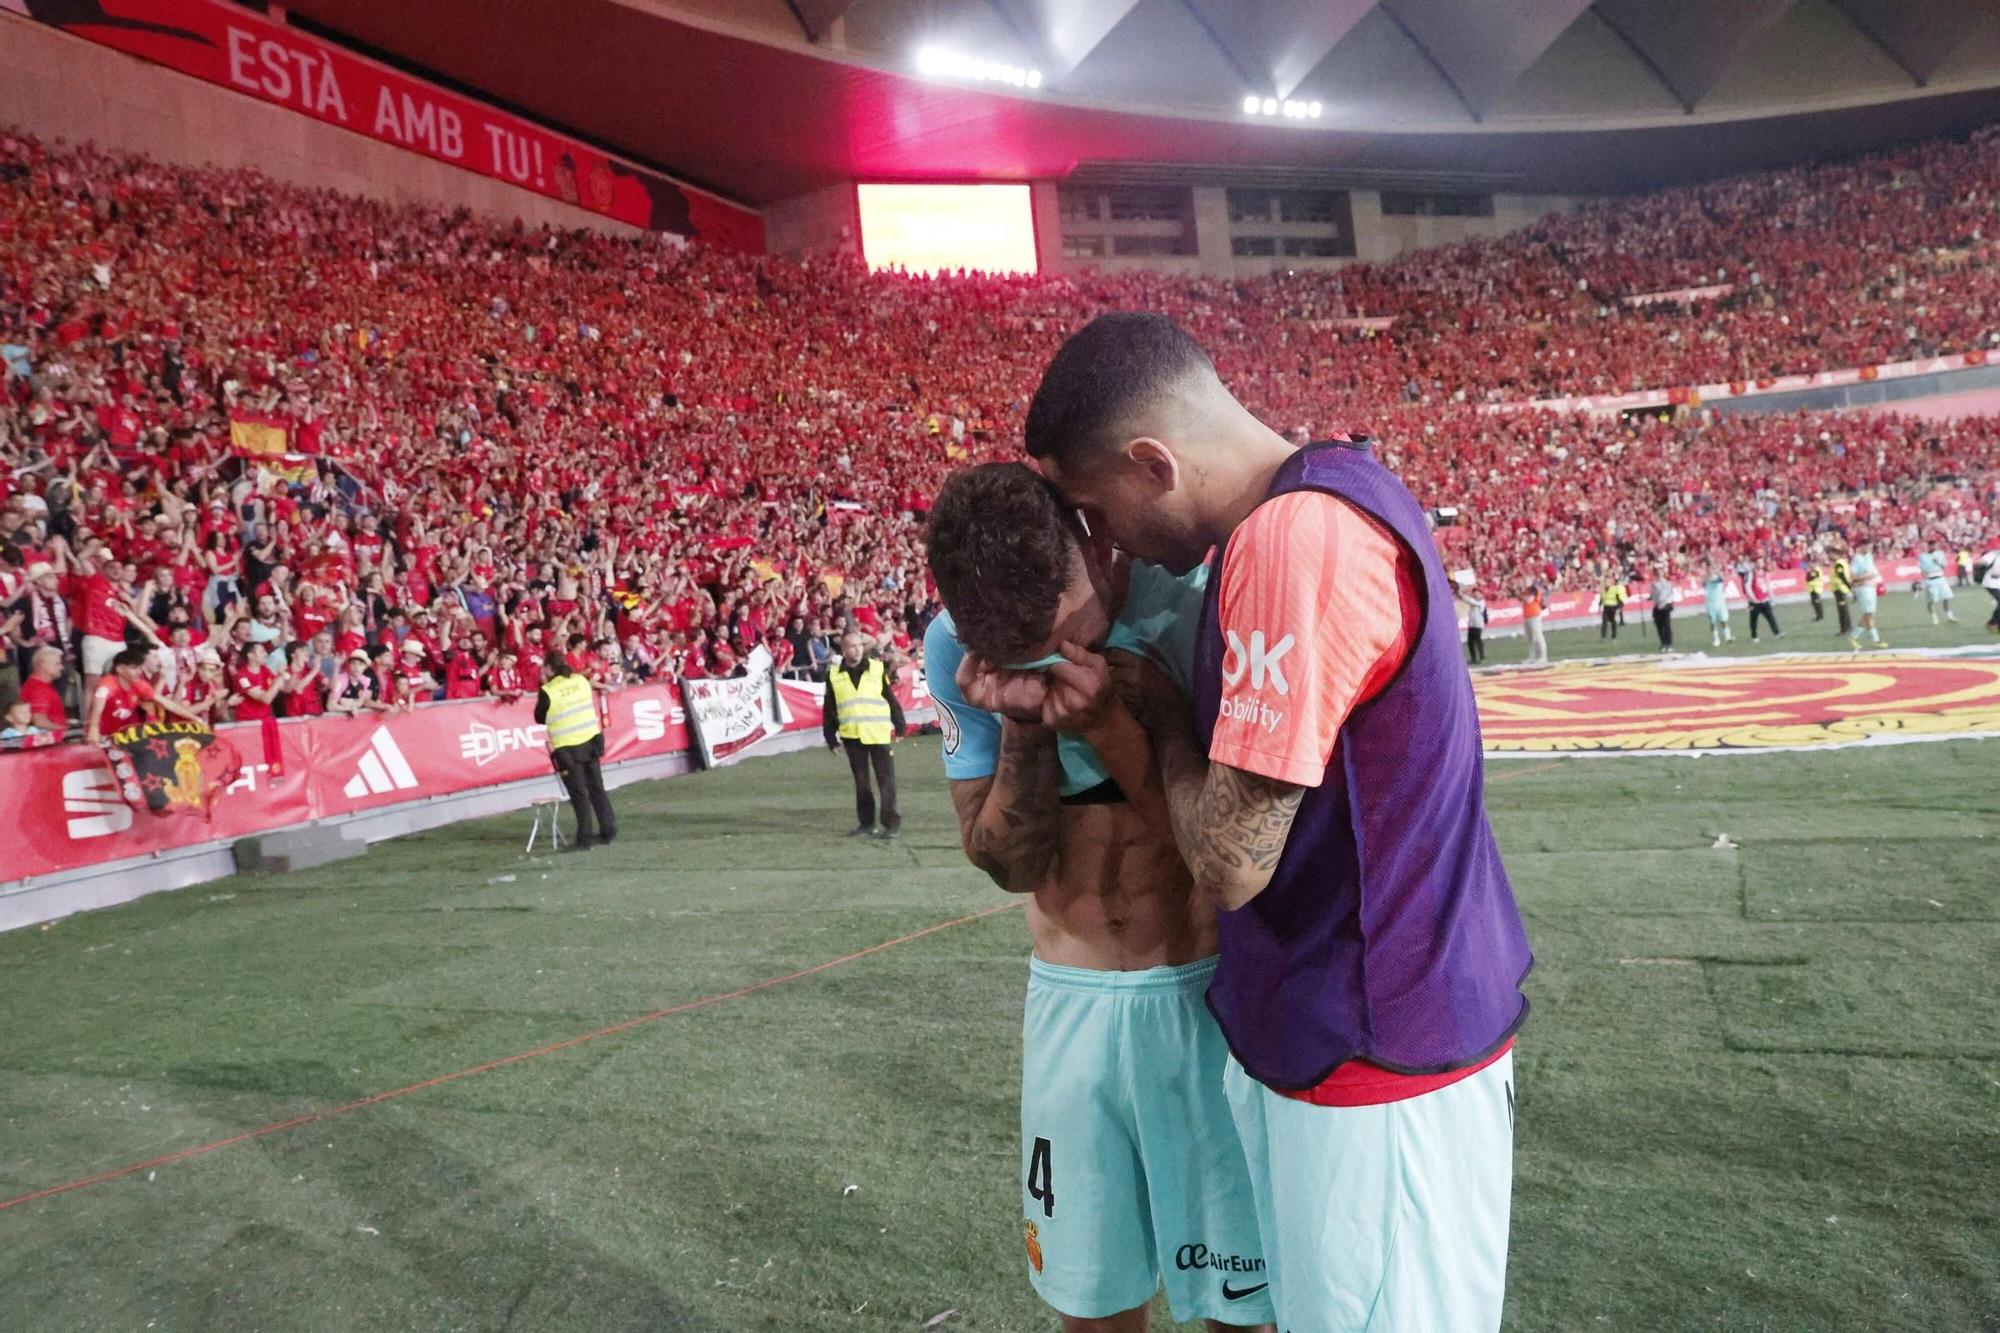 RCD Mallorca-Athletic Club| Las fotos más espectaculares de la final de Copa del Rey